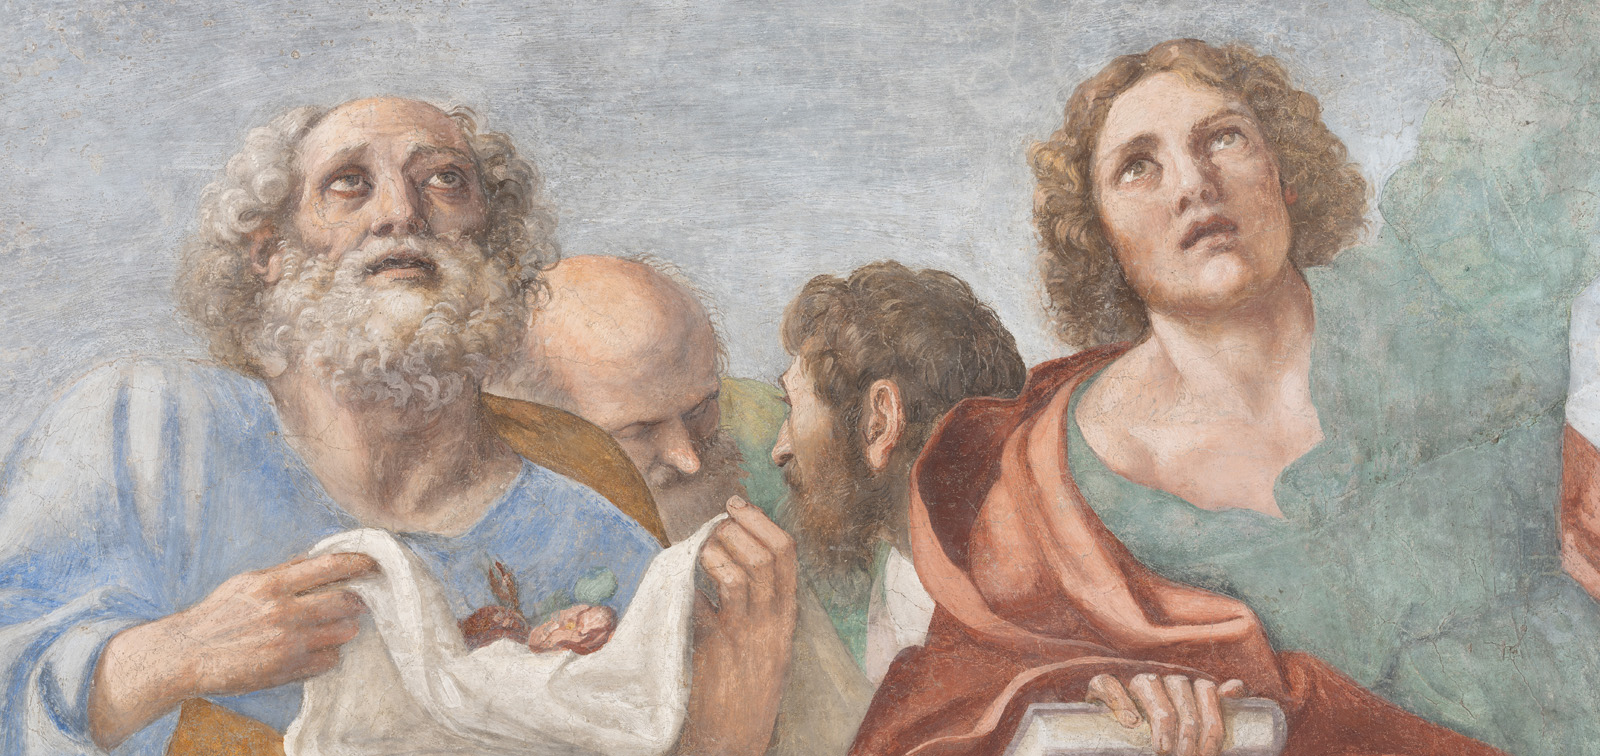 En torno a la exposición Carracci. Los frescos de la Capilla Herrera en Roma